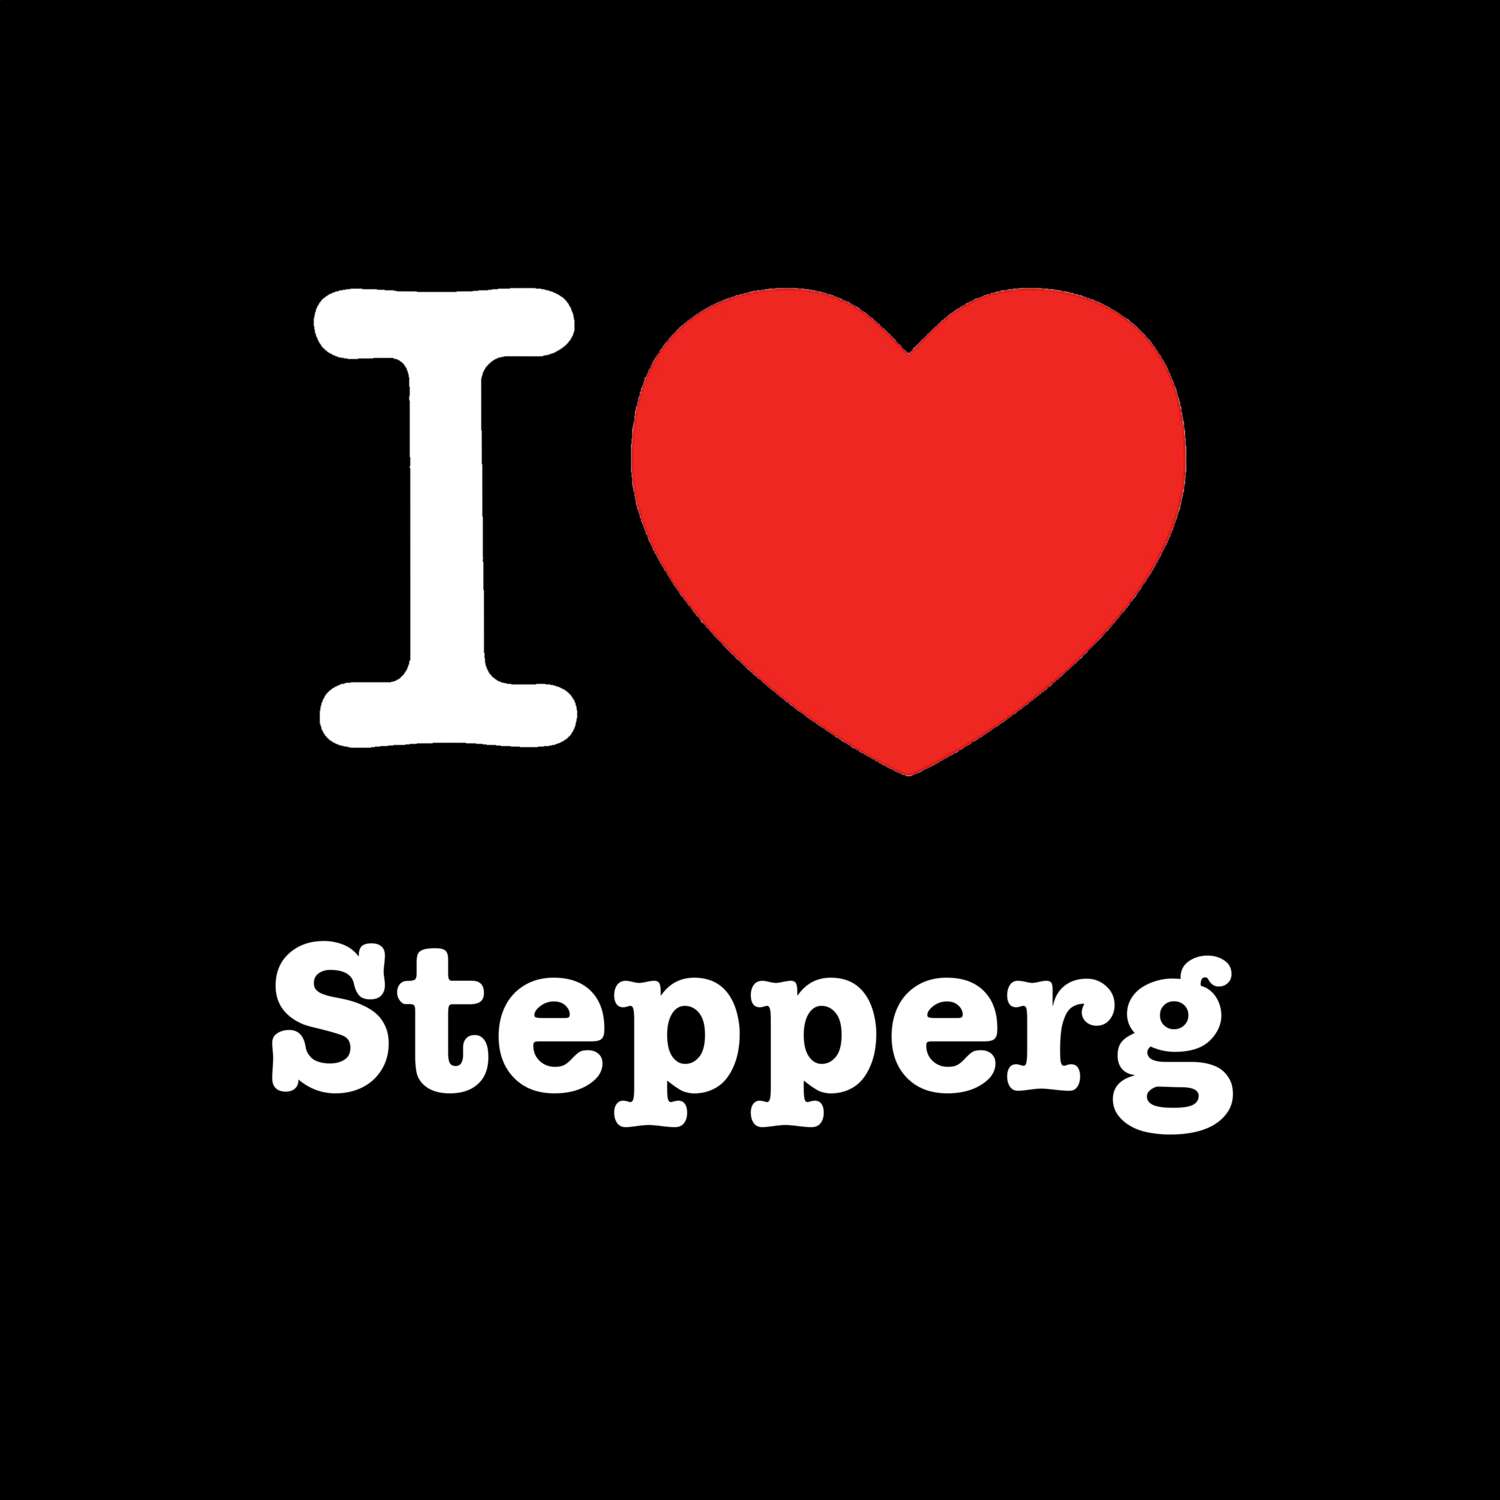 Stepperg T-Shirt »I love«